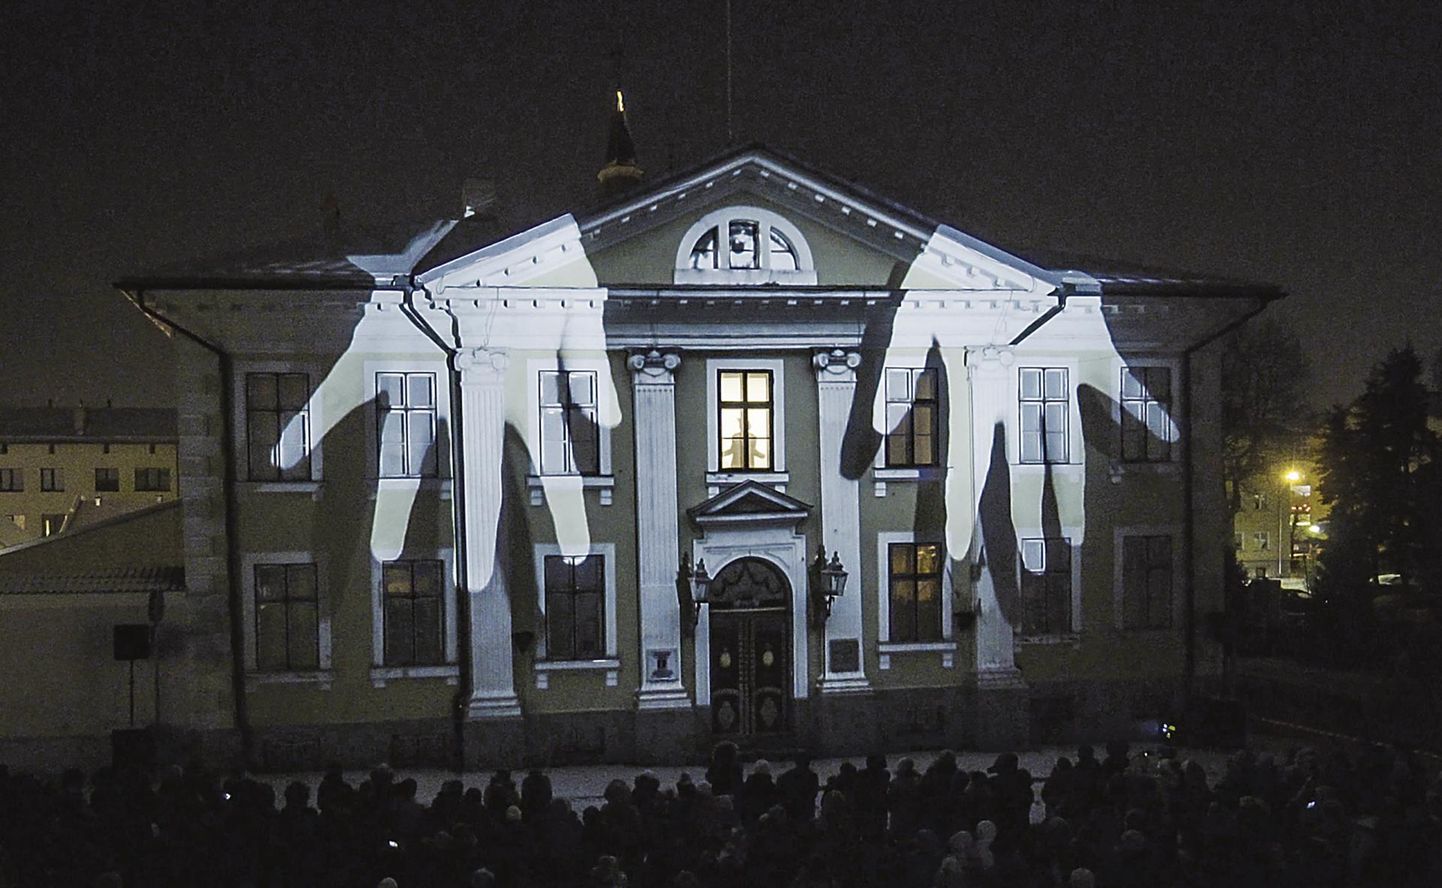 Sügisesel festivalil tuleb taasesitusele ka läinud aasta detsembris Pärnu raekoja fassaadil esimest korda nähtud valgusetendus “Pimeduse valgel”.